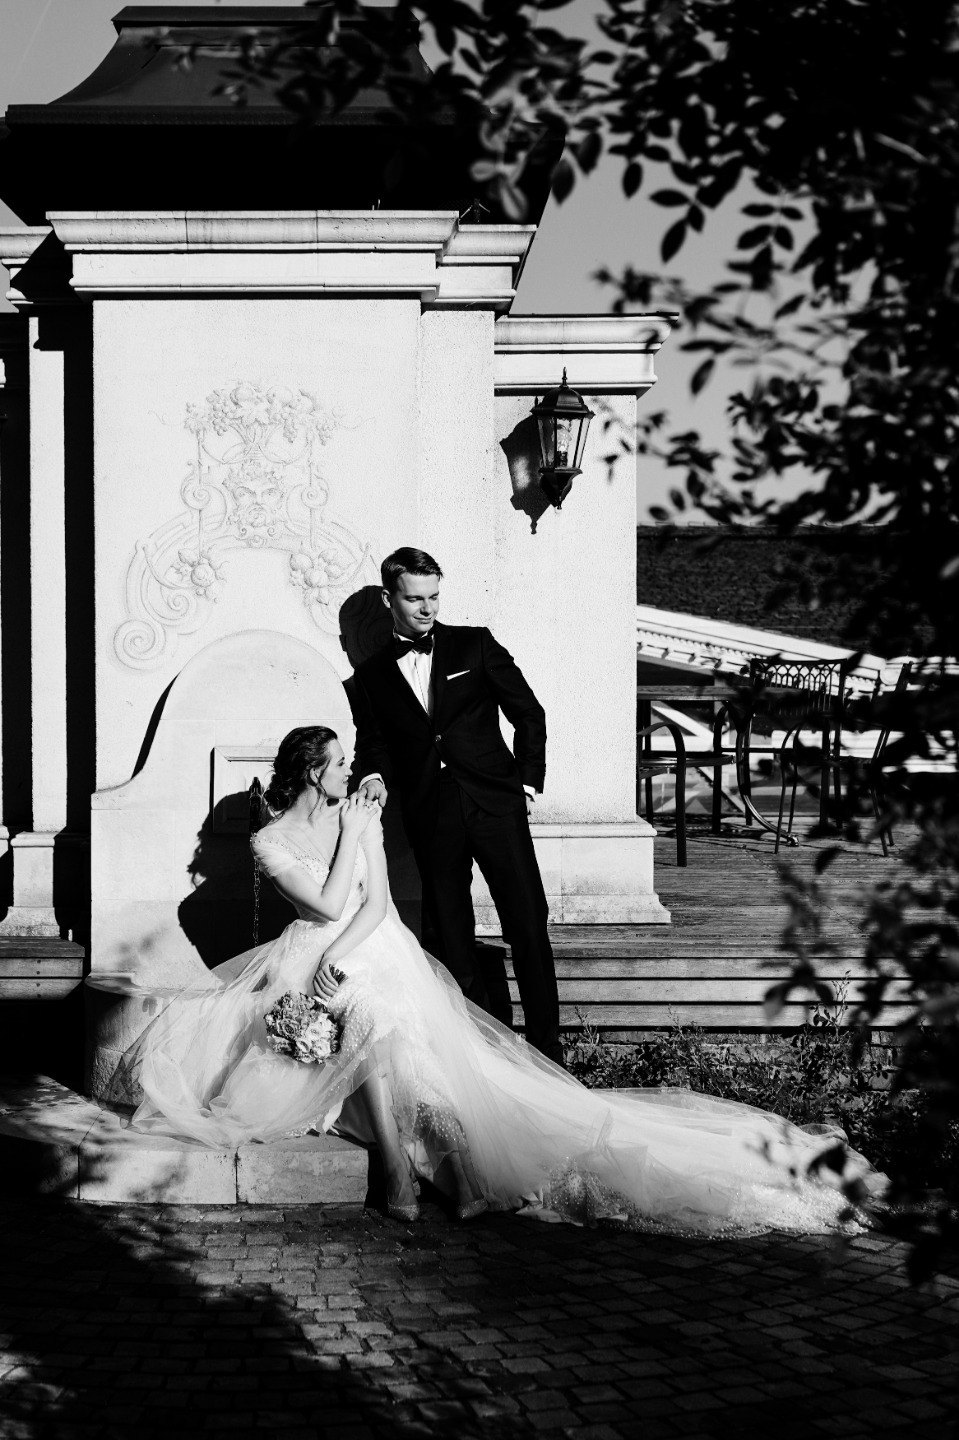 Искусство любить: романтическая свадьба в классическом стиле